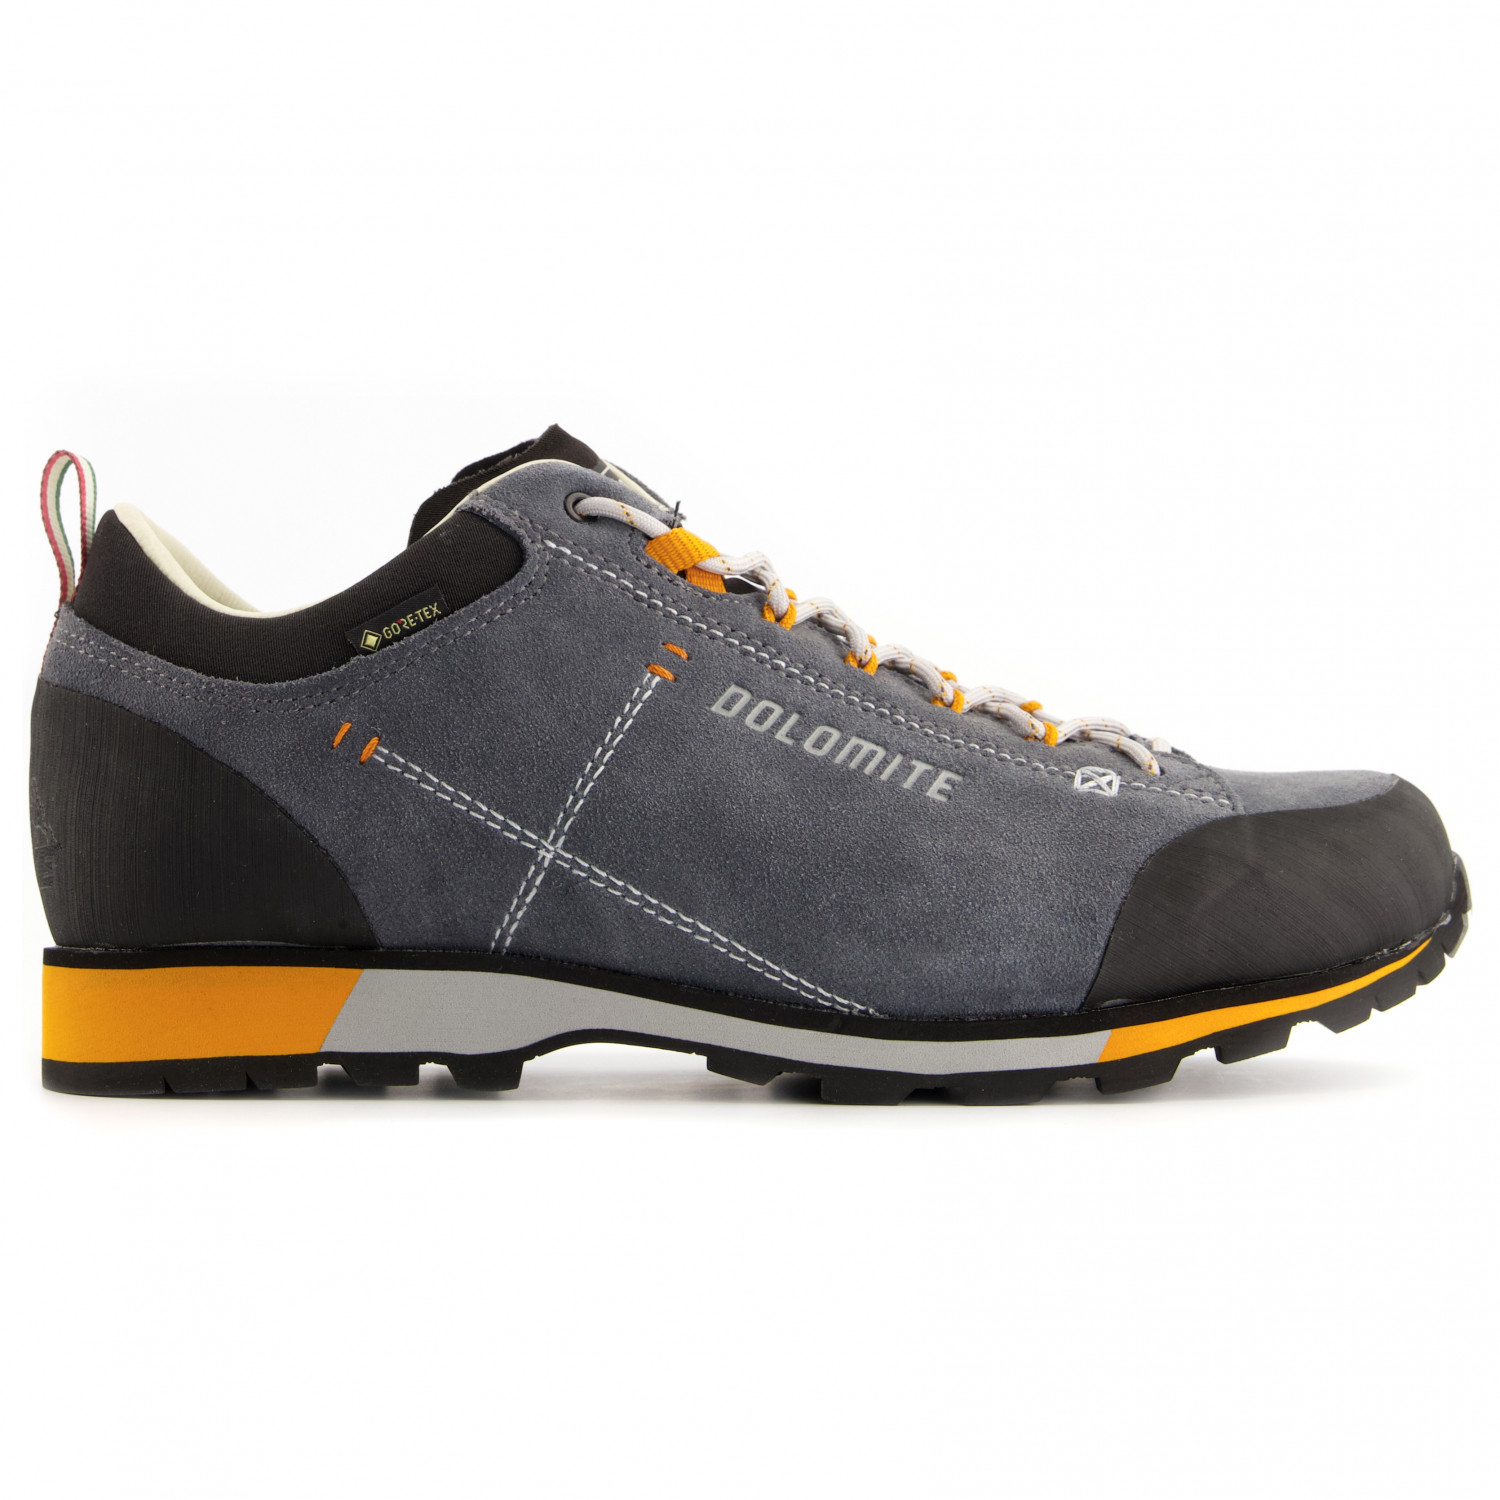 Мультиспортивная обувь Dolomite 54 Hike Low Evo GTX, цвет Gunmetal Grey